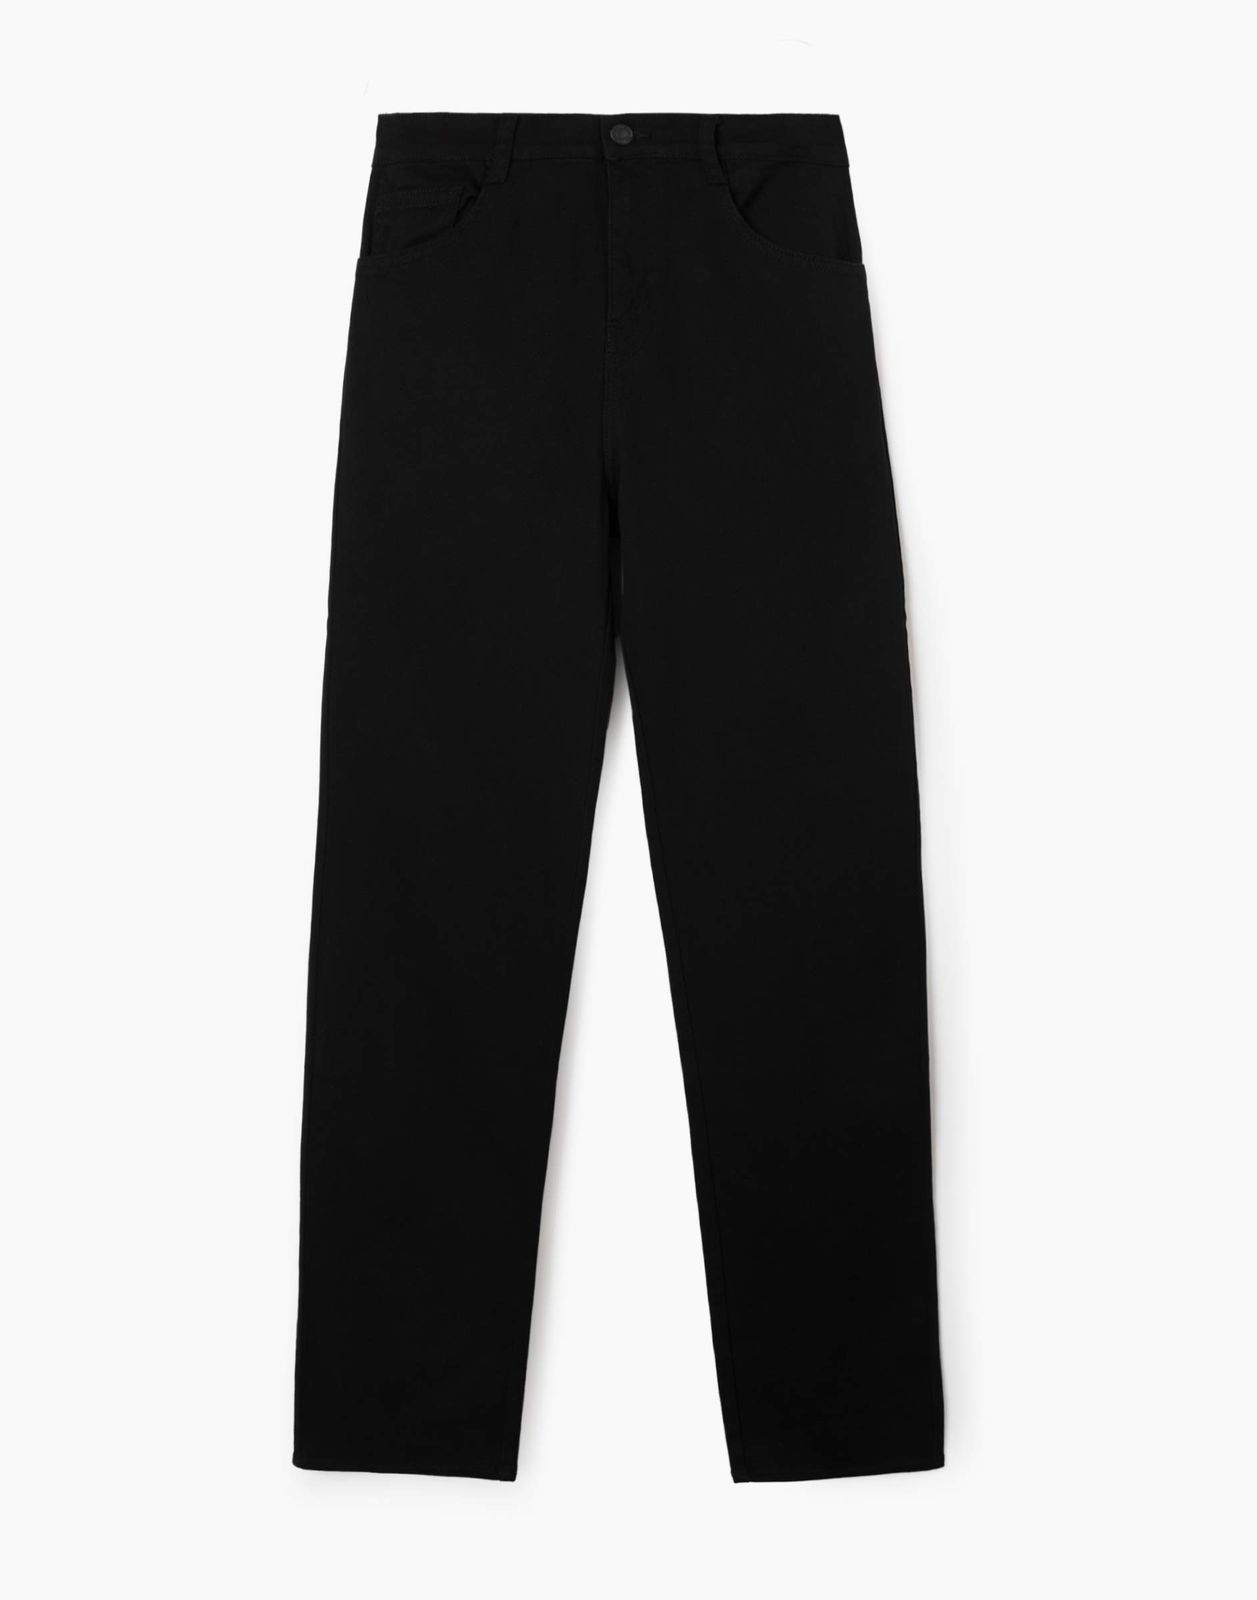 Чёрные зауженные джинсы Slim для мальчика BJN013780 14+/170